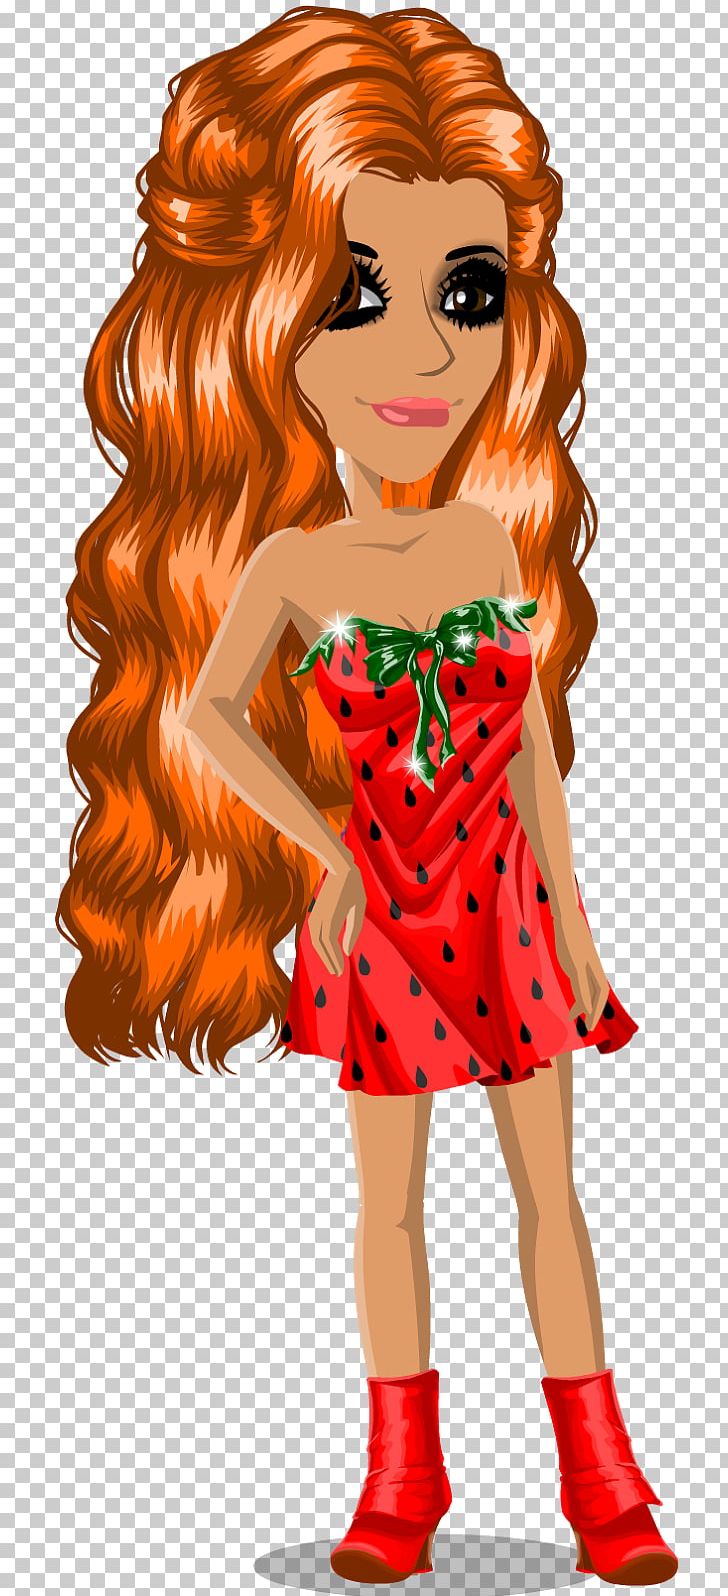 Red Hair Barbie Long Hair PNG, Clipart, Art, Barbie, Brown, Brown Hair, Cartoon Free PNG Download